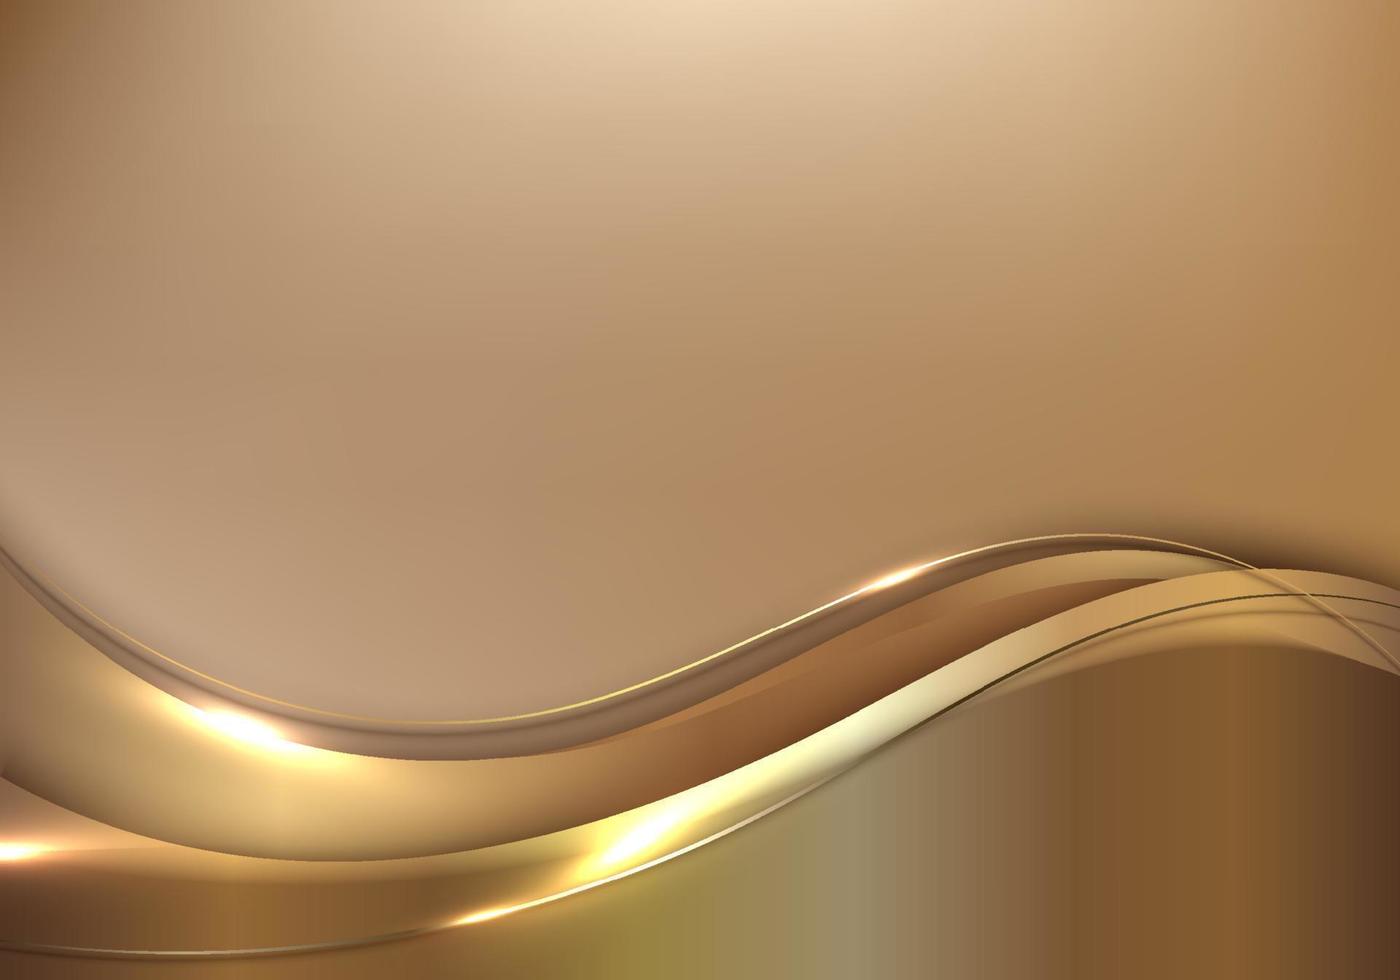 abstrakte vorlage 3d elegante goldene wellenform mit glänzender goldlinie funkelnde beleuchtung auf goldenem hintergrund luxusstil vektor